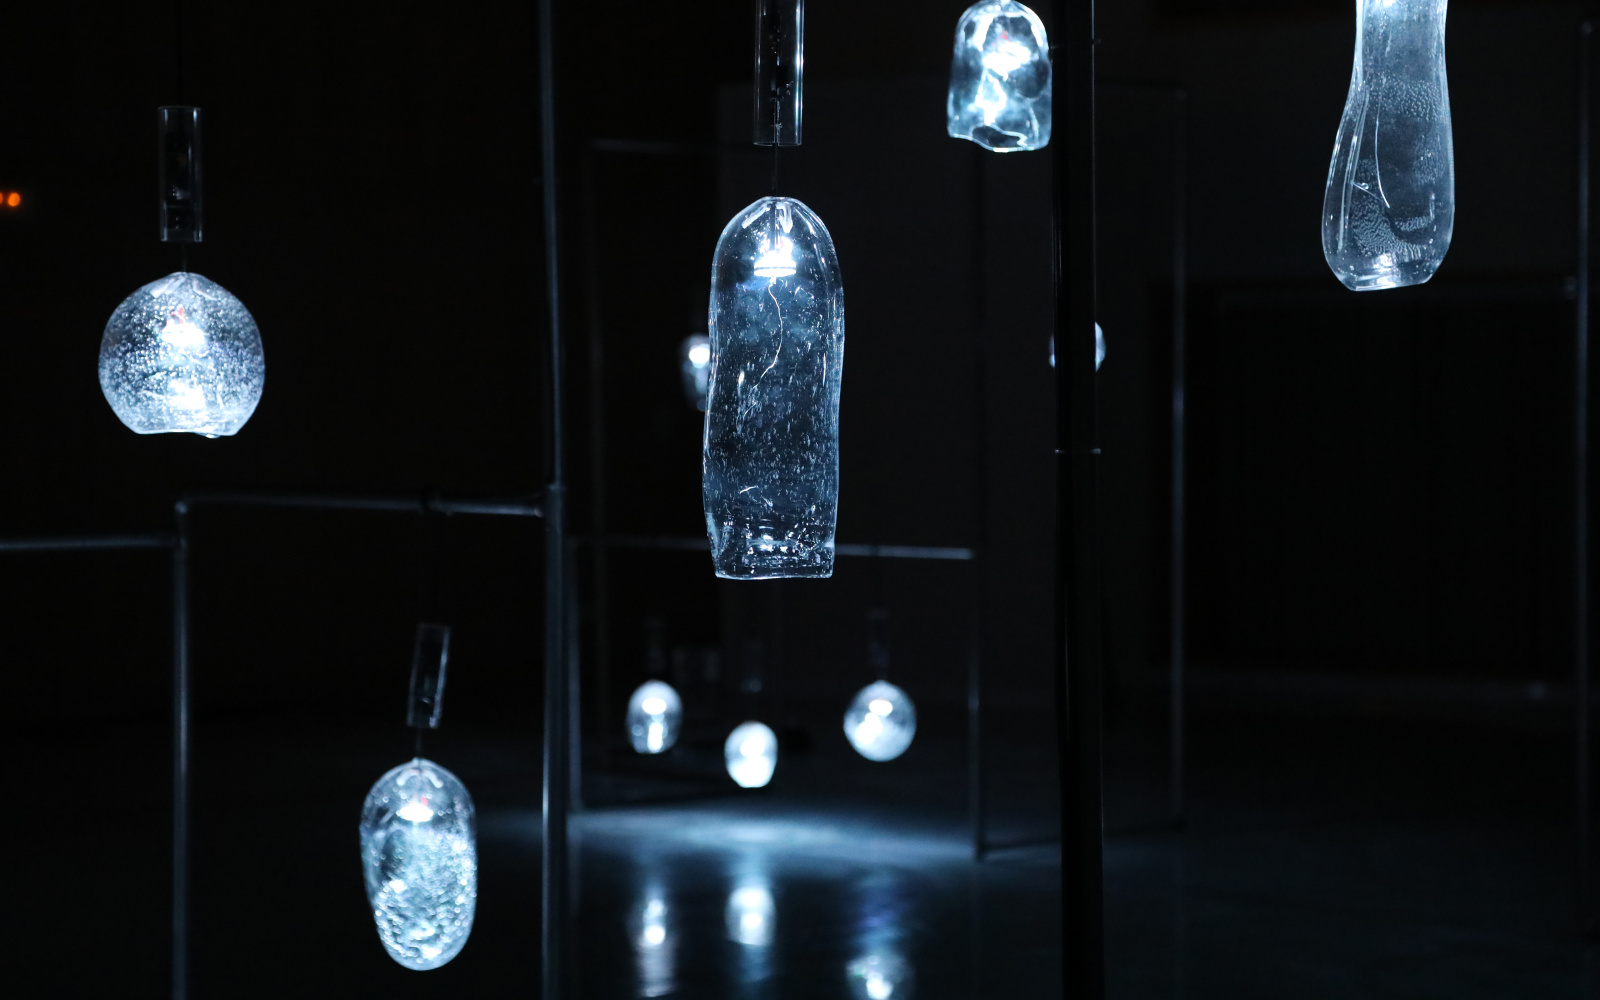 Verschiedenförmige Glasgefäße hängen in einem dunklen Raum und leuchten schwach.